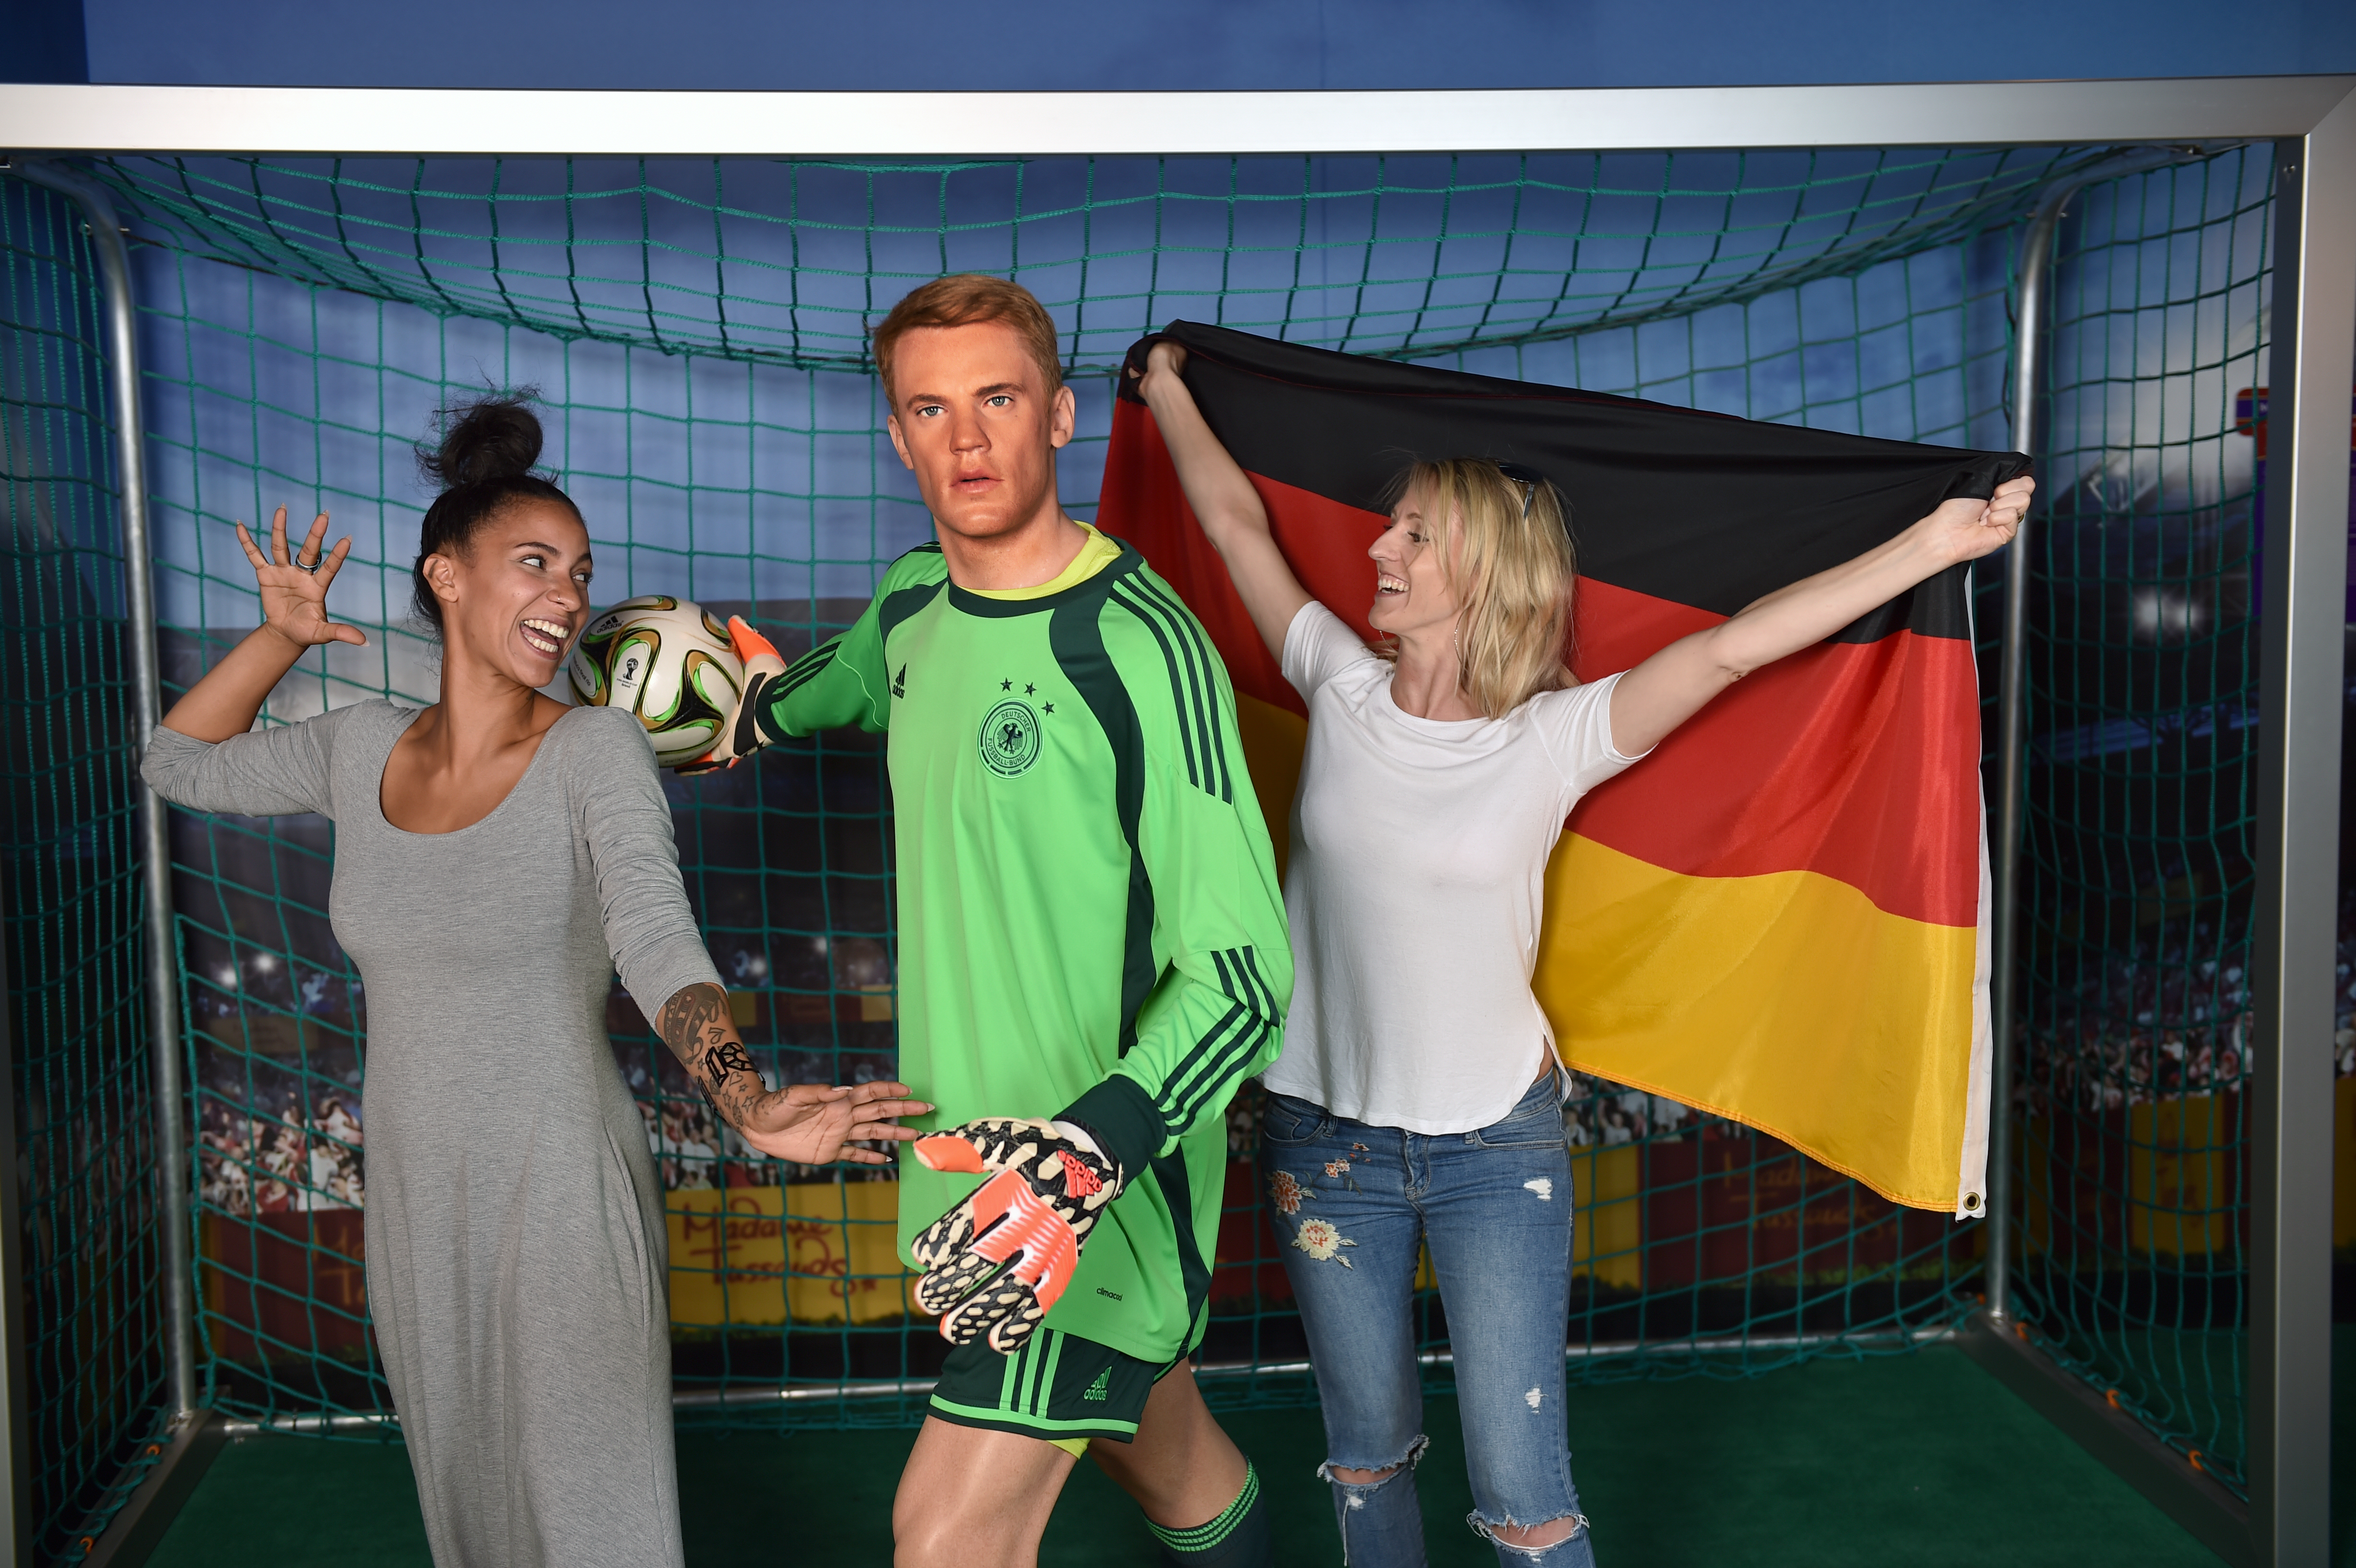 Feiere eine Fußballparty mit Manuel Neuer im Madame Tussauds Berlin